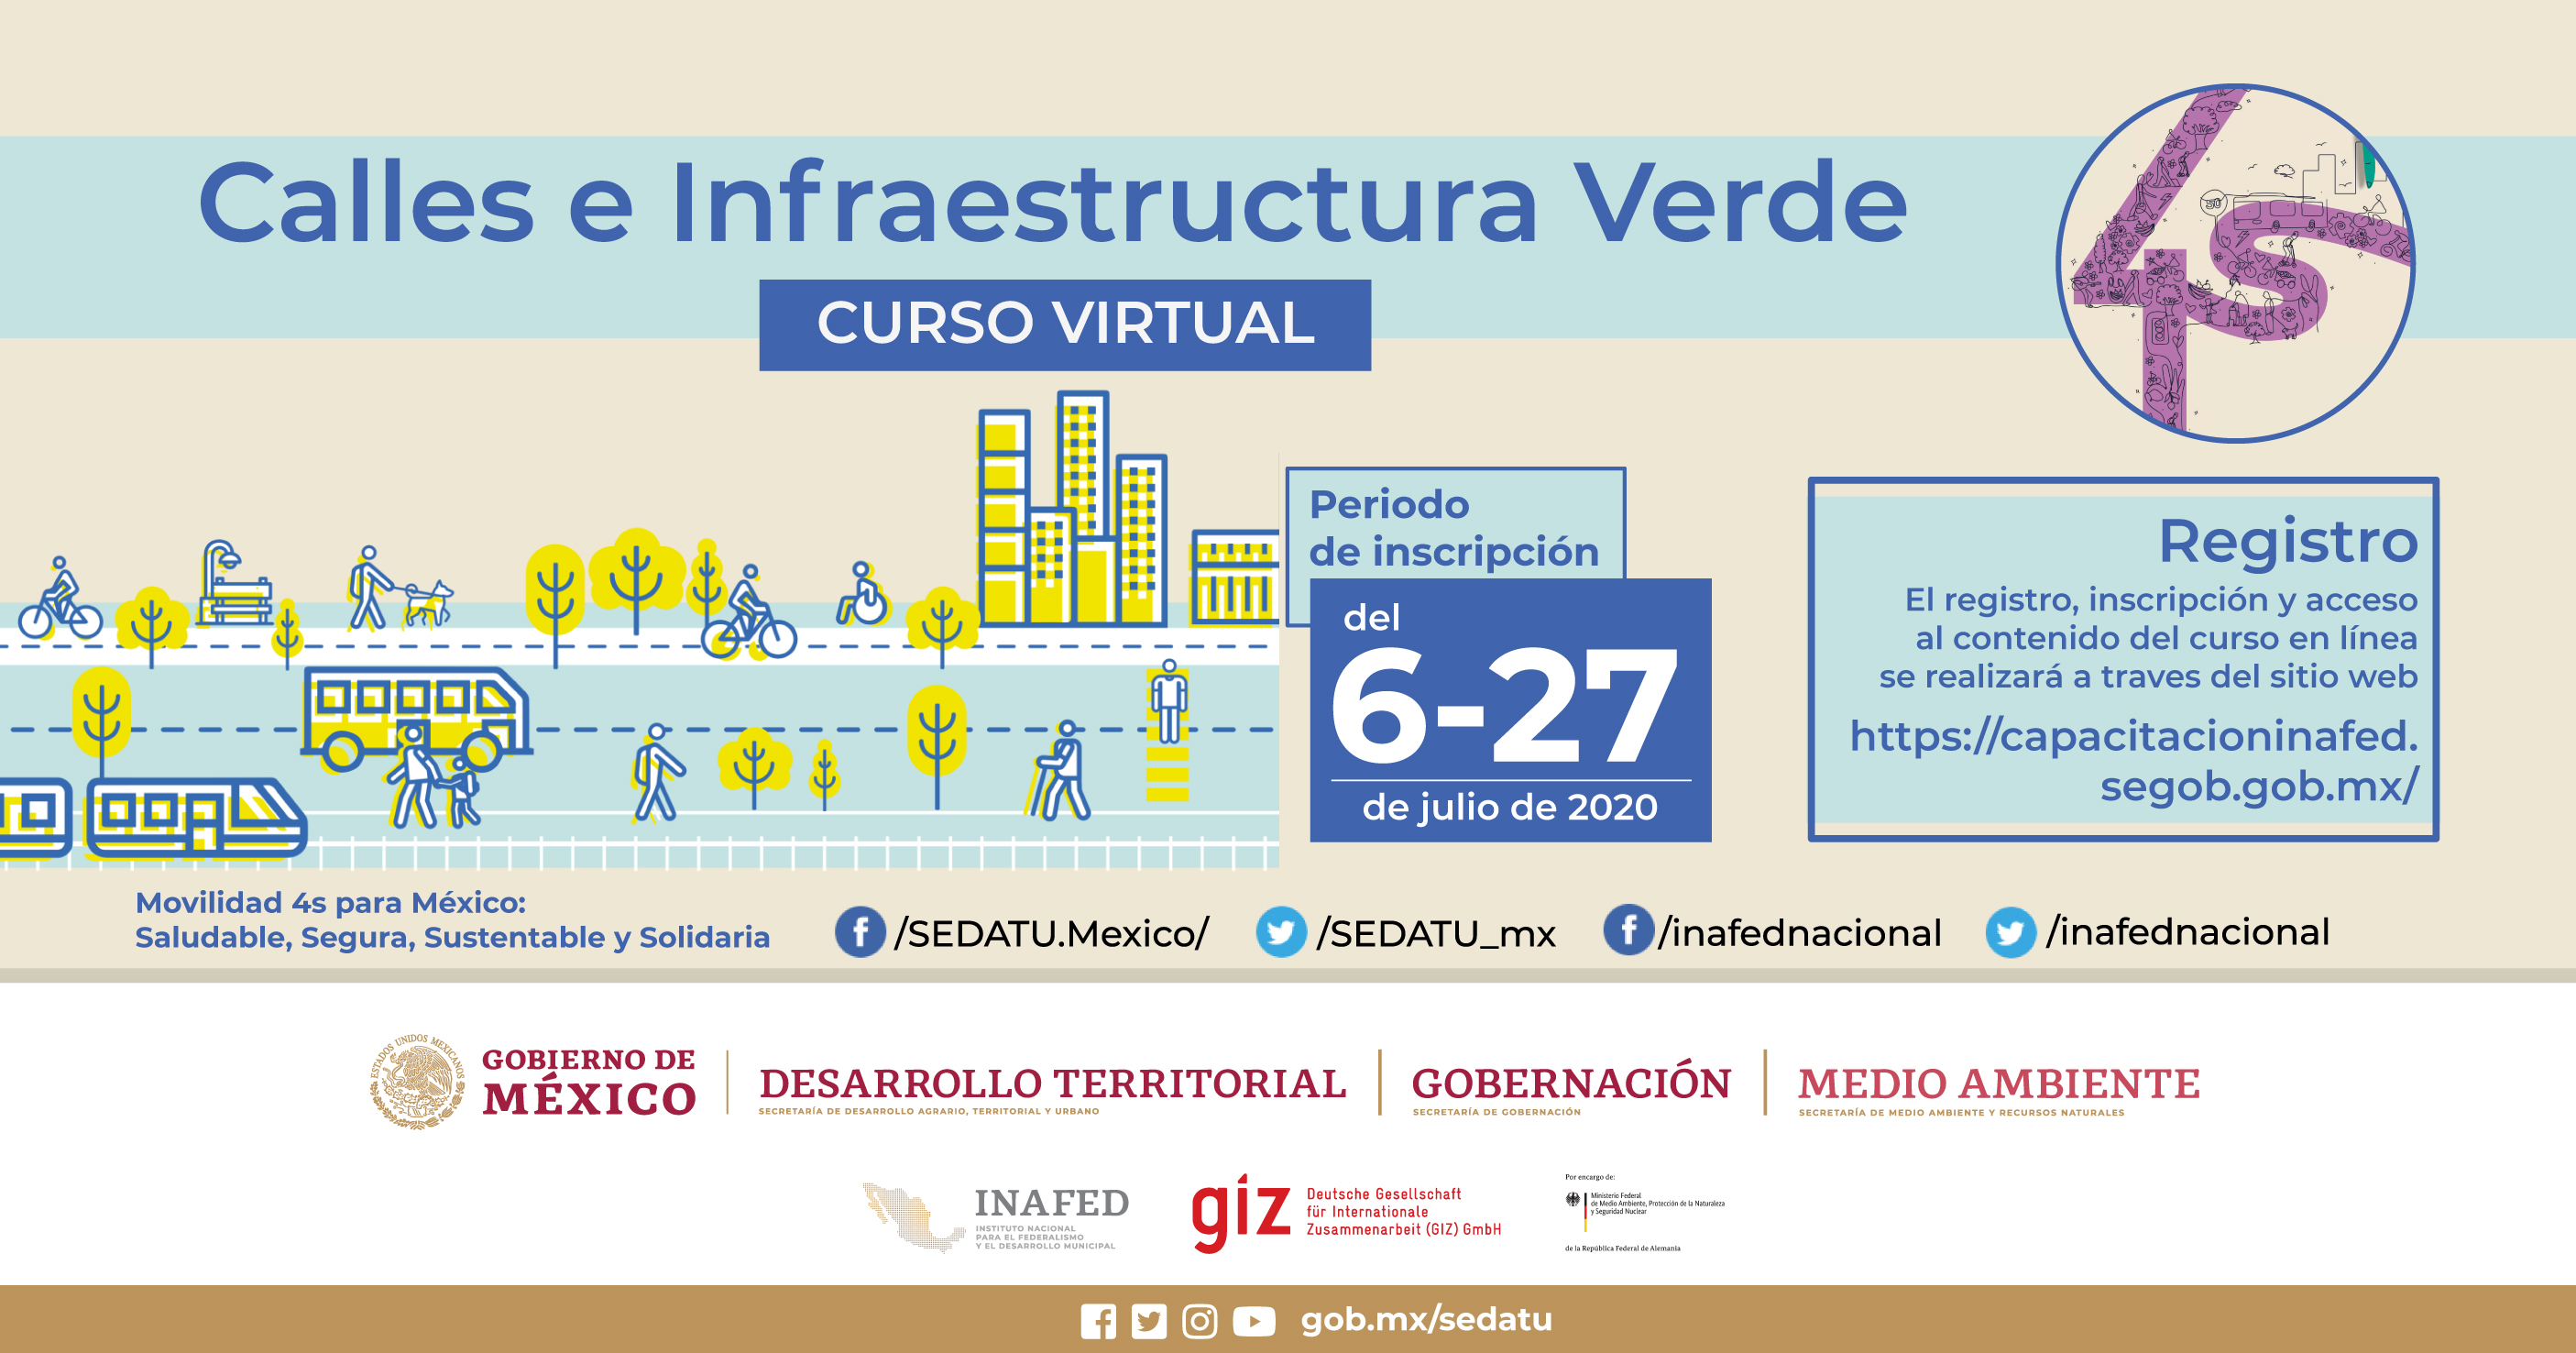 Curso Virtual “Calles e infraestructura verde”